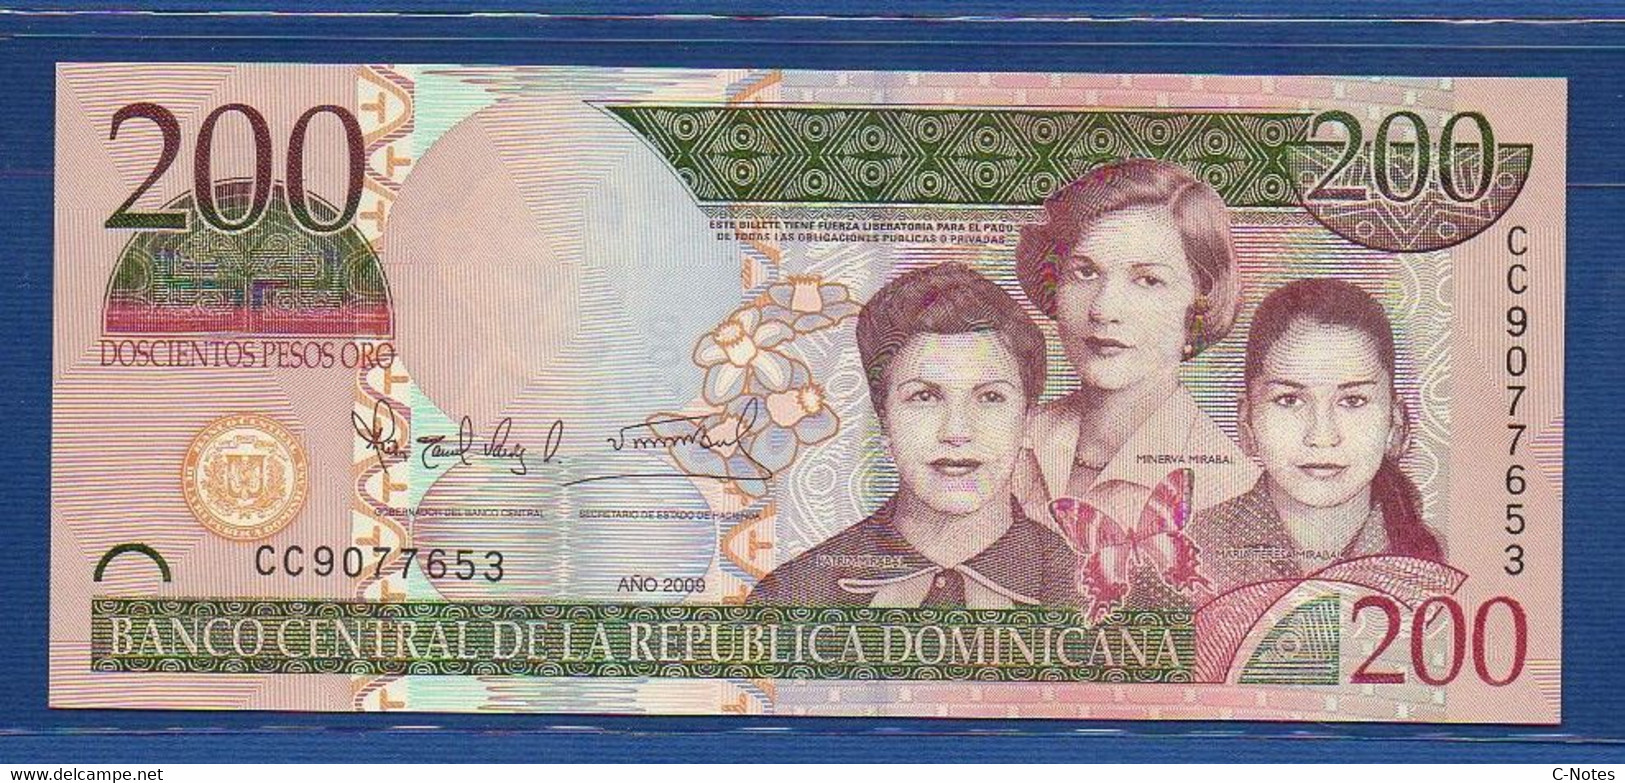 DOMINICAN REPUBLIC - P.178A – 200 Pesos Oro 2009 UNC, Serie CC 9077653 - Dominicana